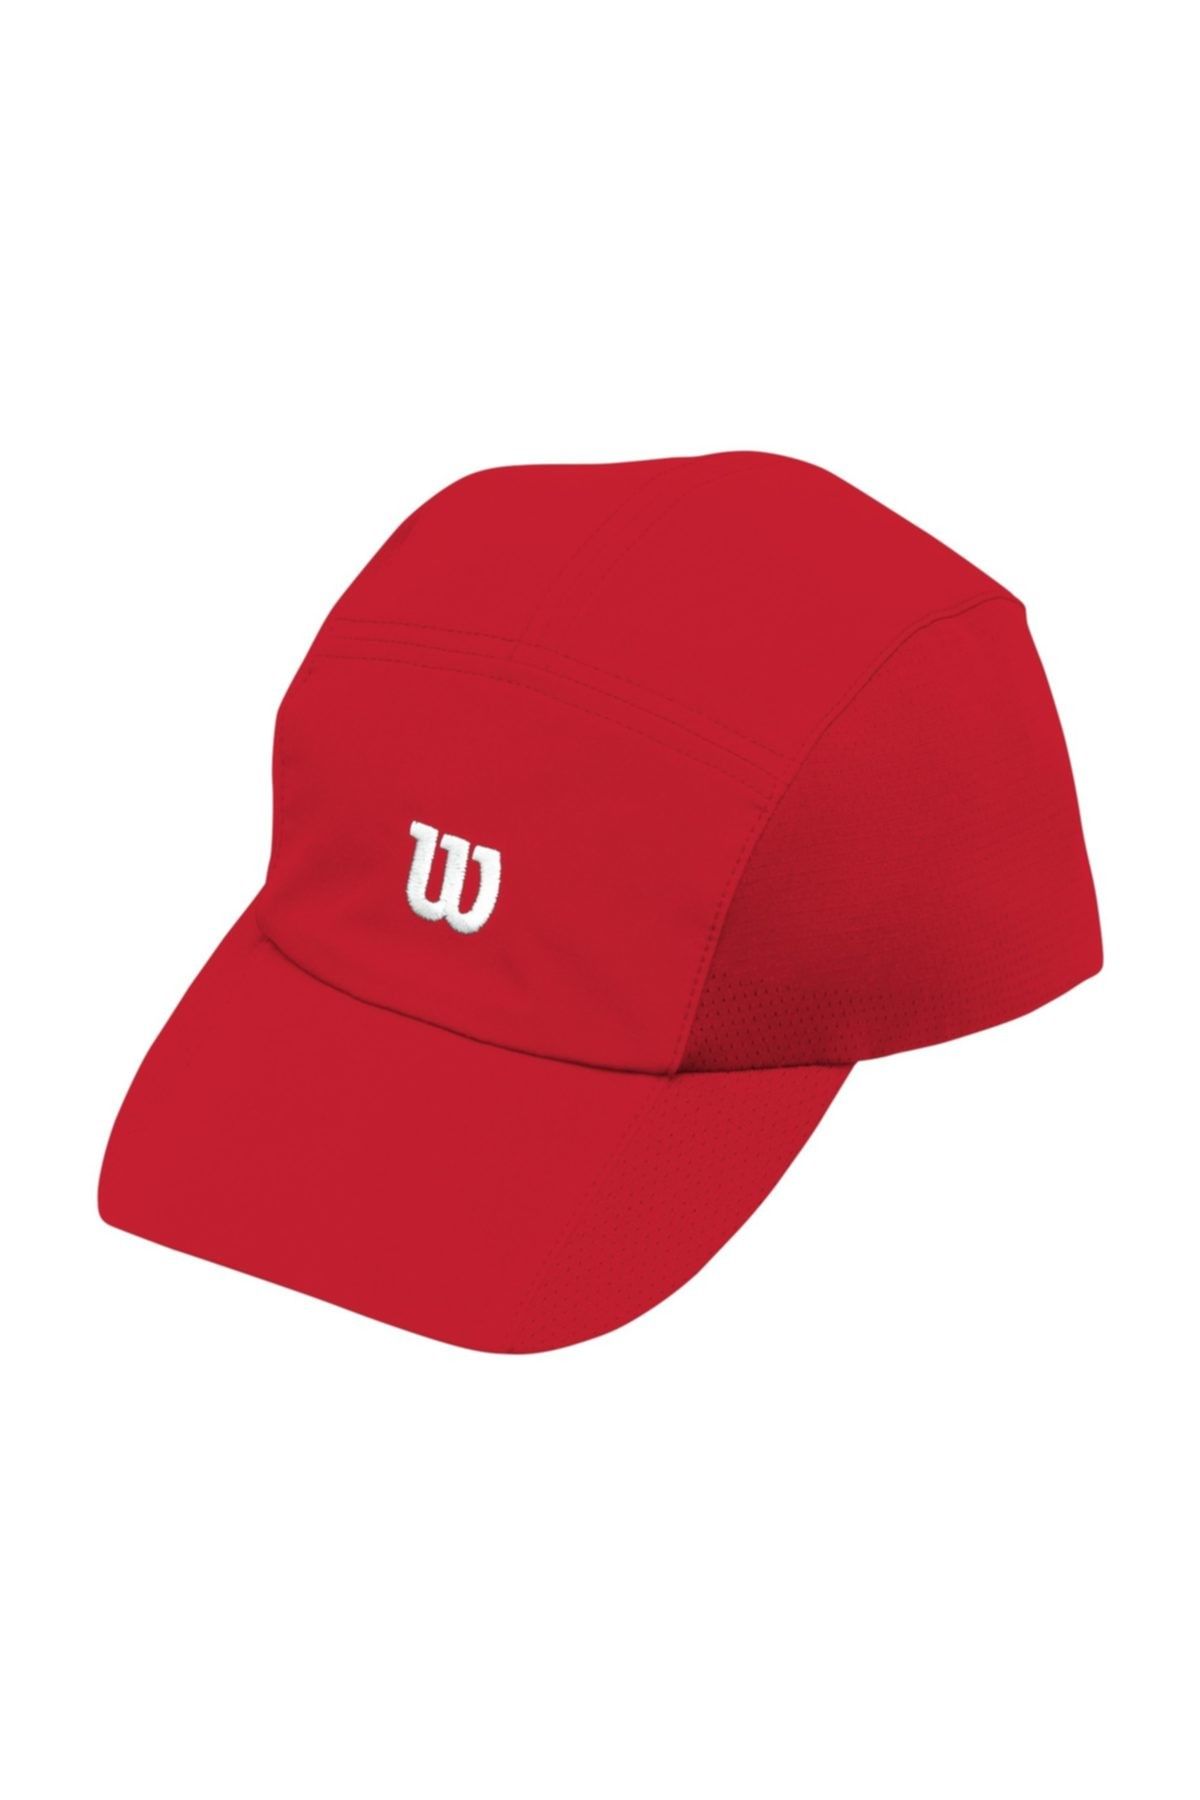 Wilson Şapka Rush Stretch  Kırmızı ( WR5004900 )